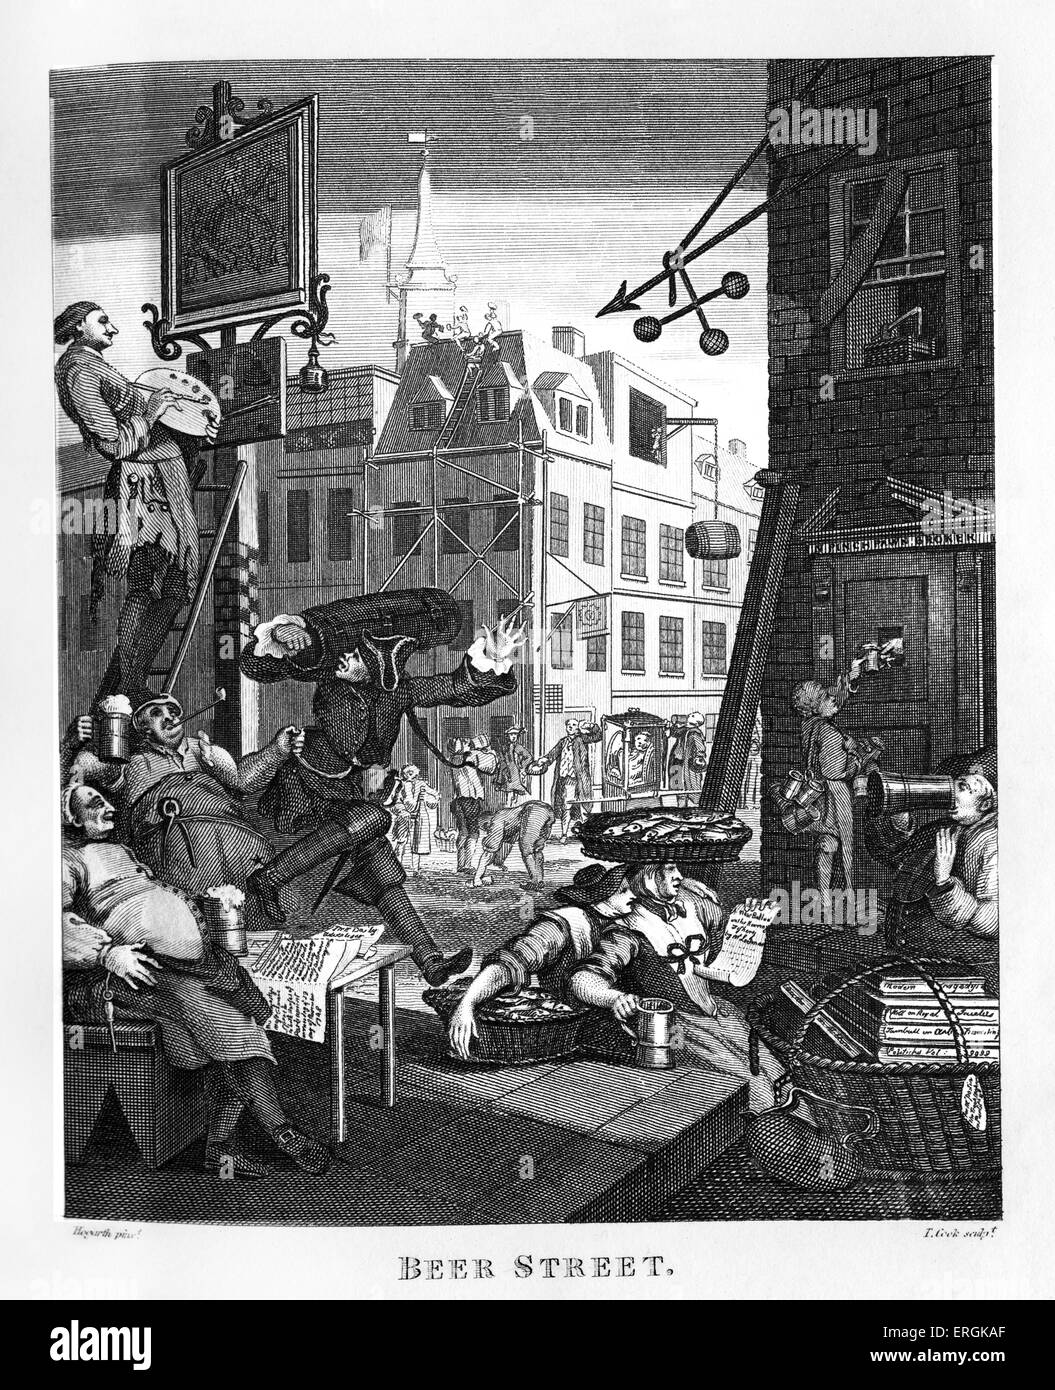 La birra Street da William Hogarth, 1751. Accoppiato con il Gin lane, queste incisioni supportato il Gin Act del 1751.incisi da Thomas Foto Stock